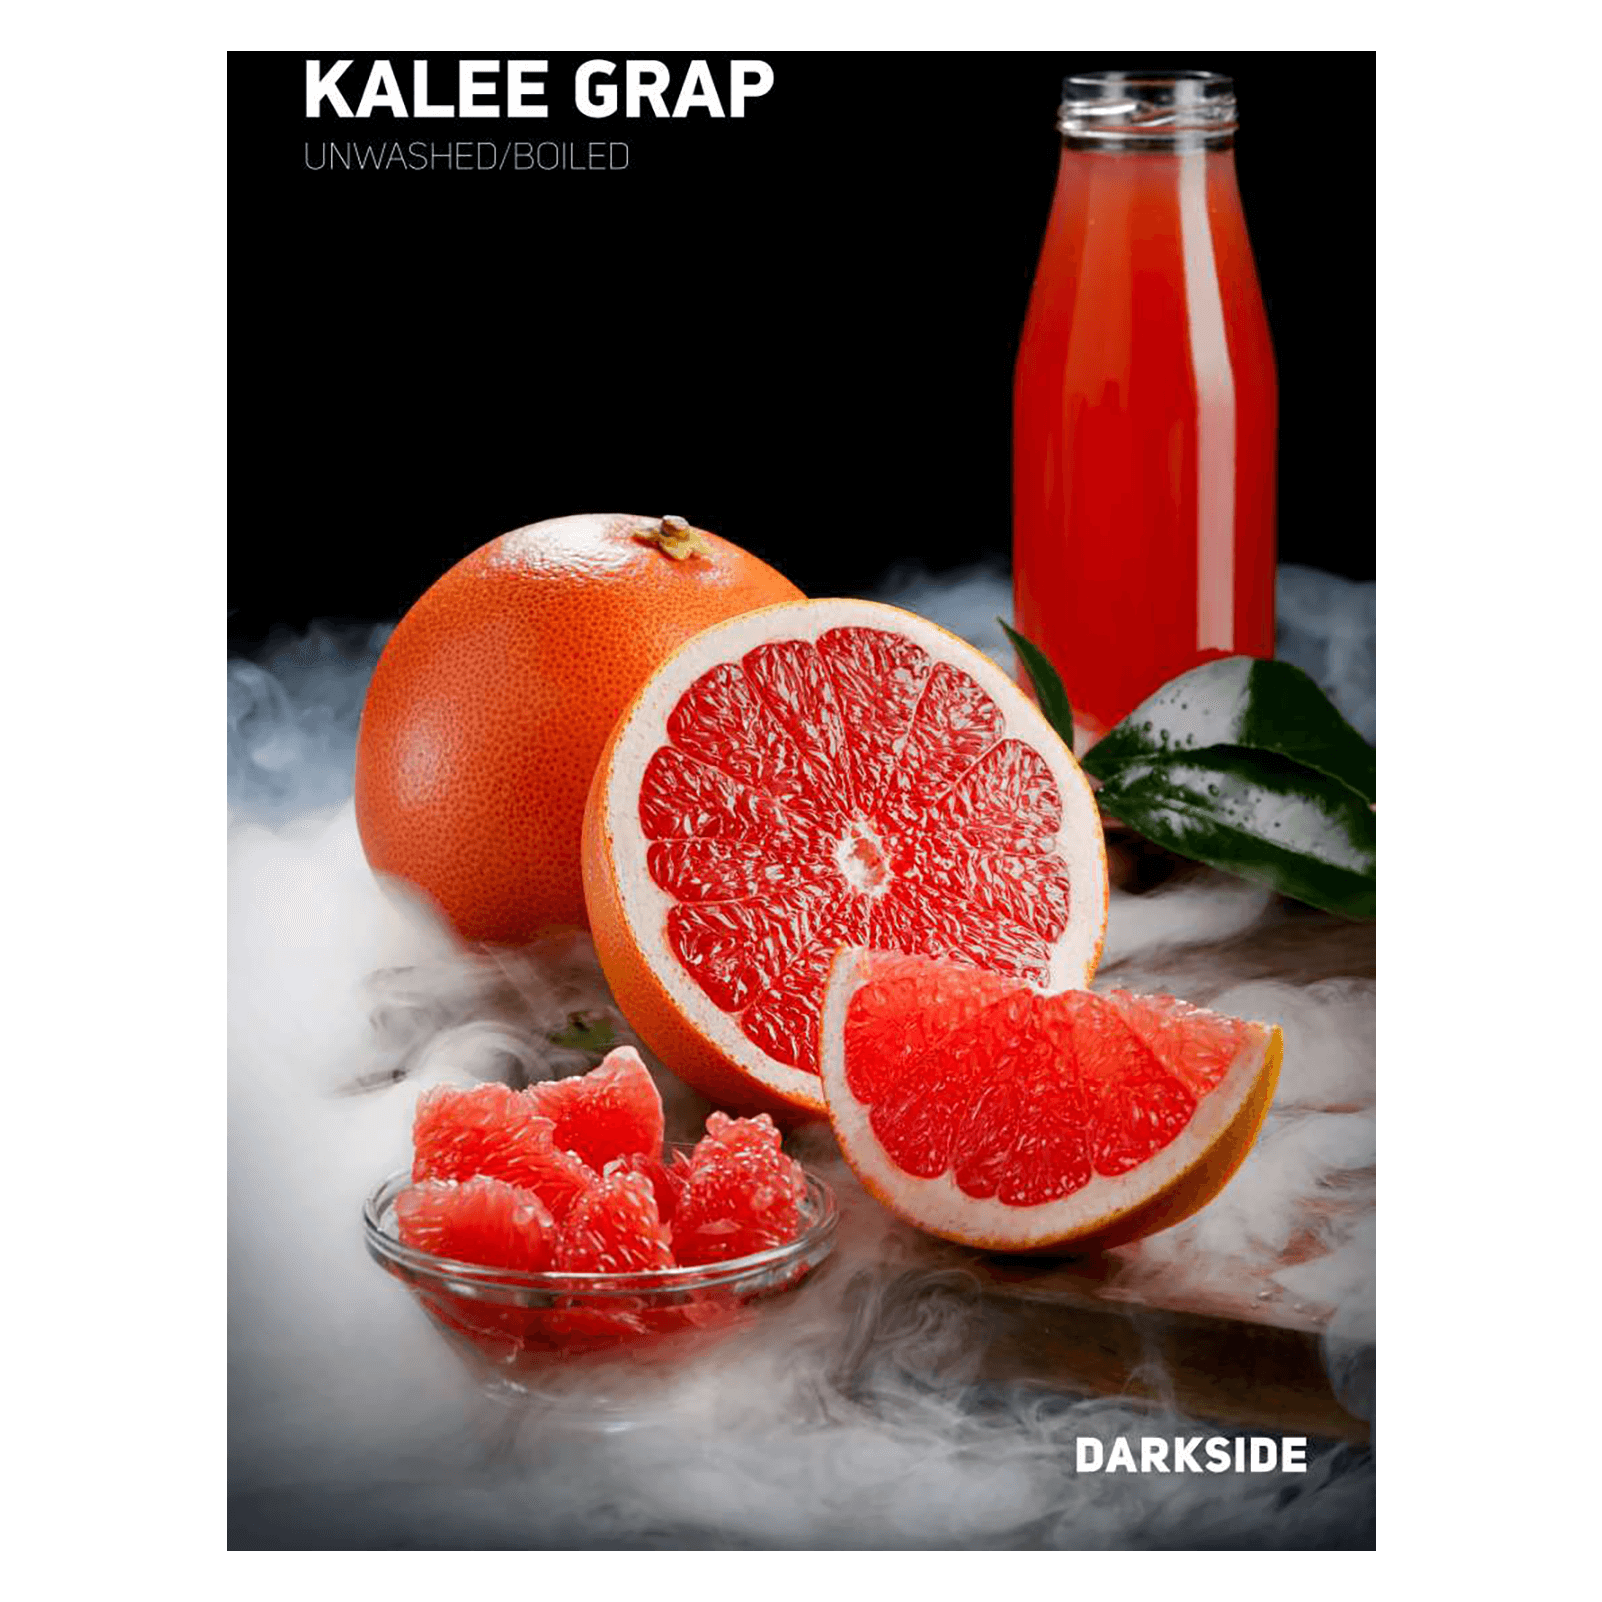 Darkside Base 25g - Kalee Grap